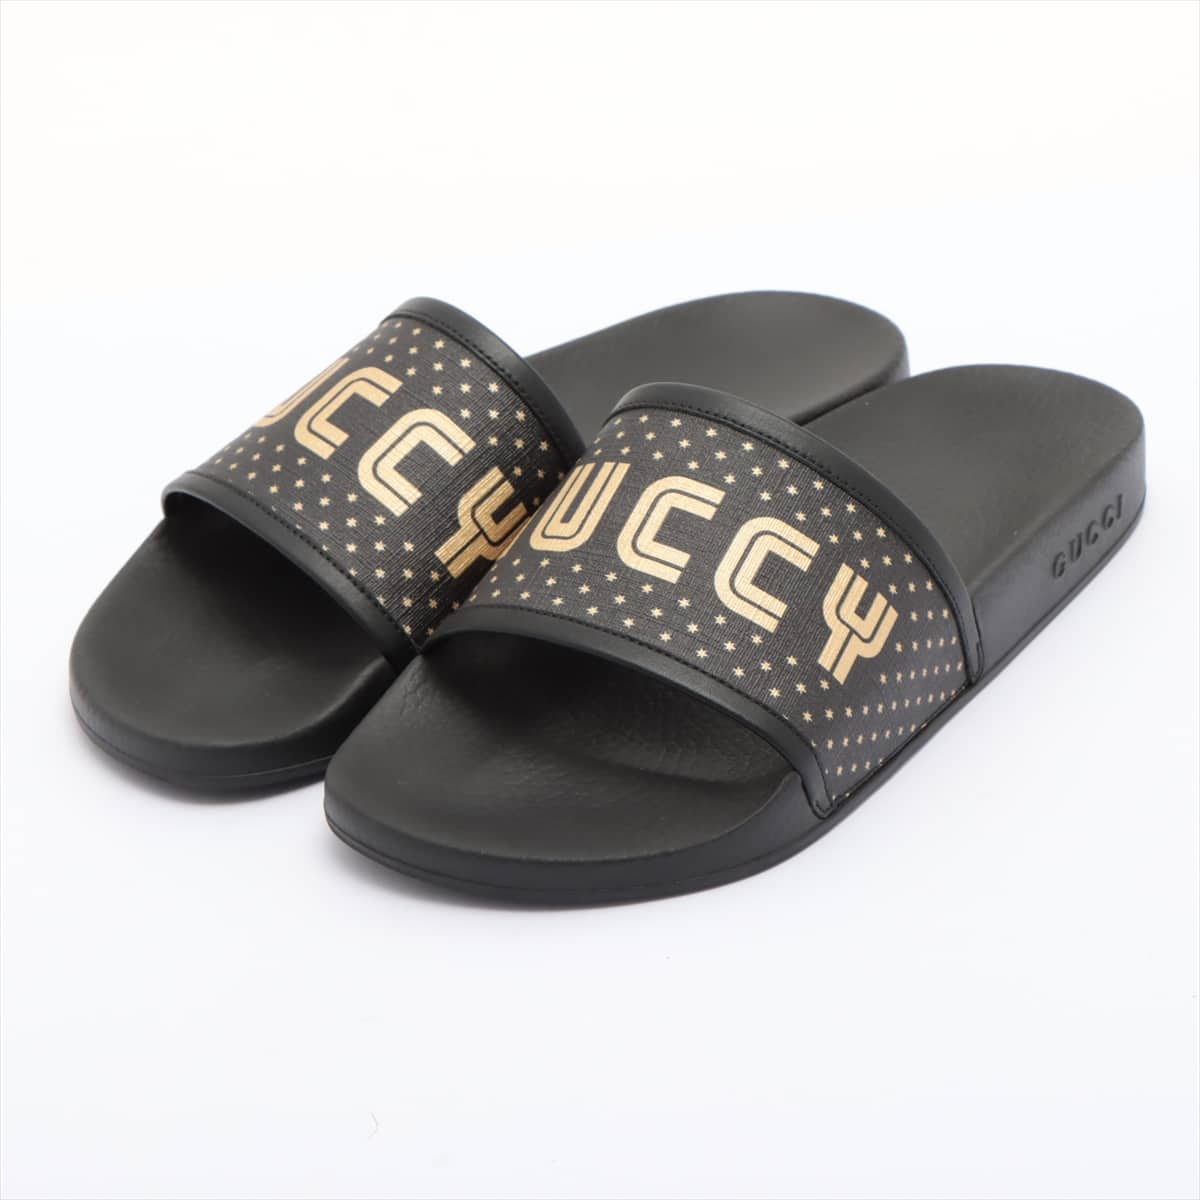 Gucci Rubber Sandals 9 Men's Black 519982 9QR10 1085 Star Sega